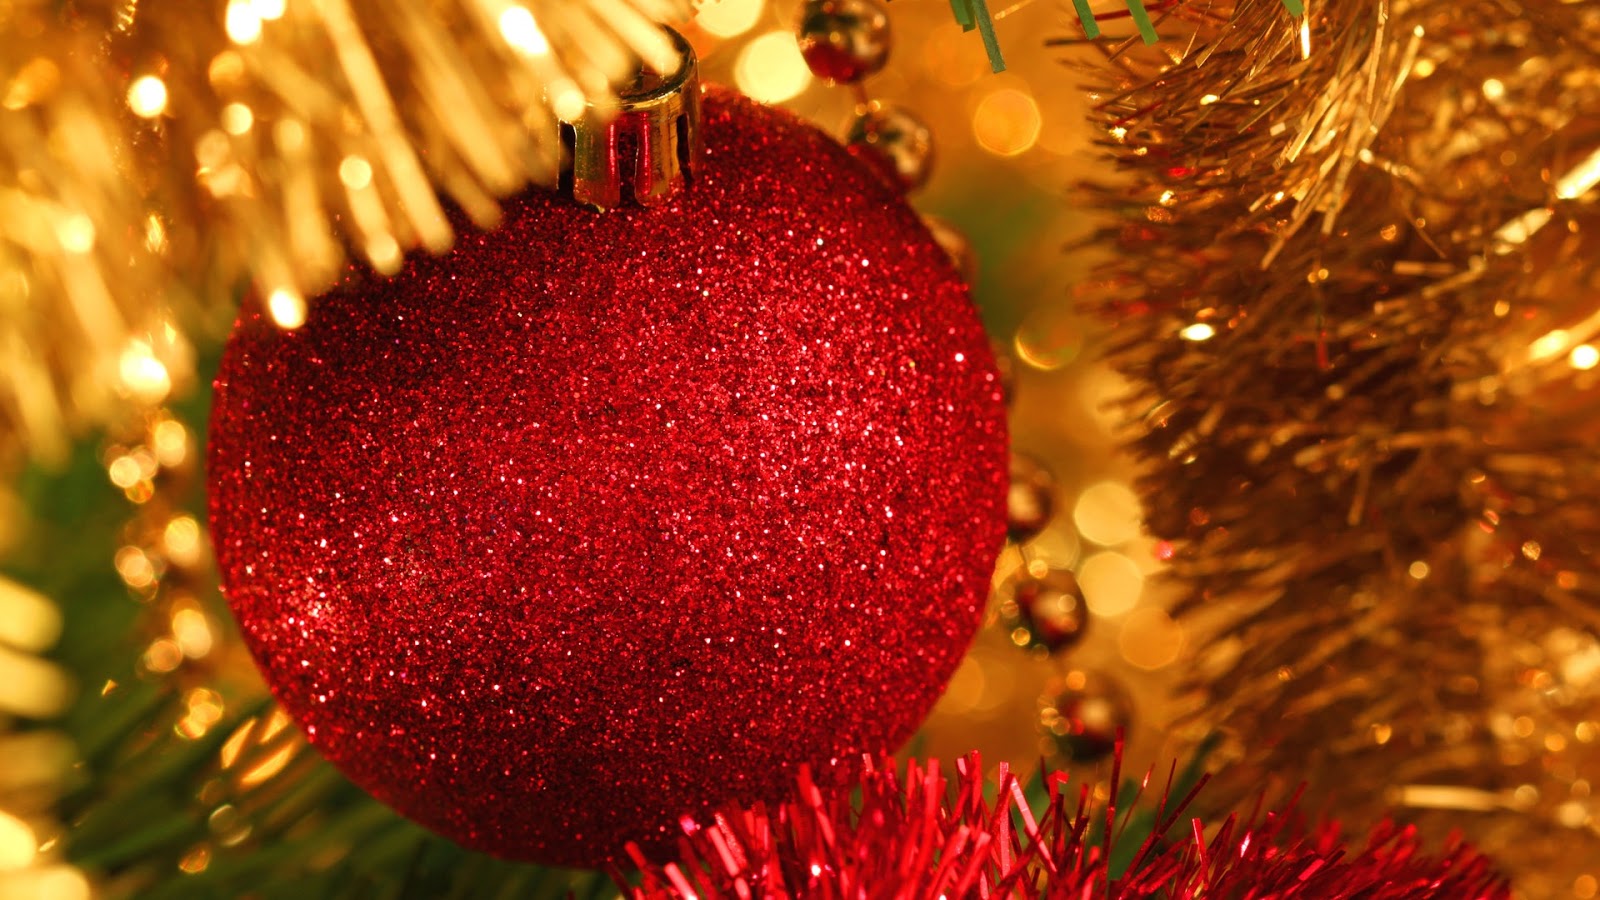 hochauflösende weihnachtstapete,weihnachtsdekoration,weihnachtsschmuck,weihnachtsbaum,weihnachten,weihnachtsbeleuchtung